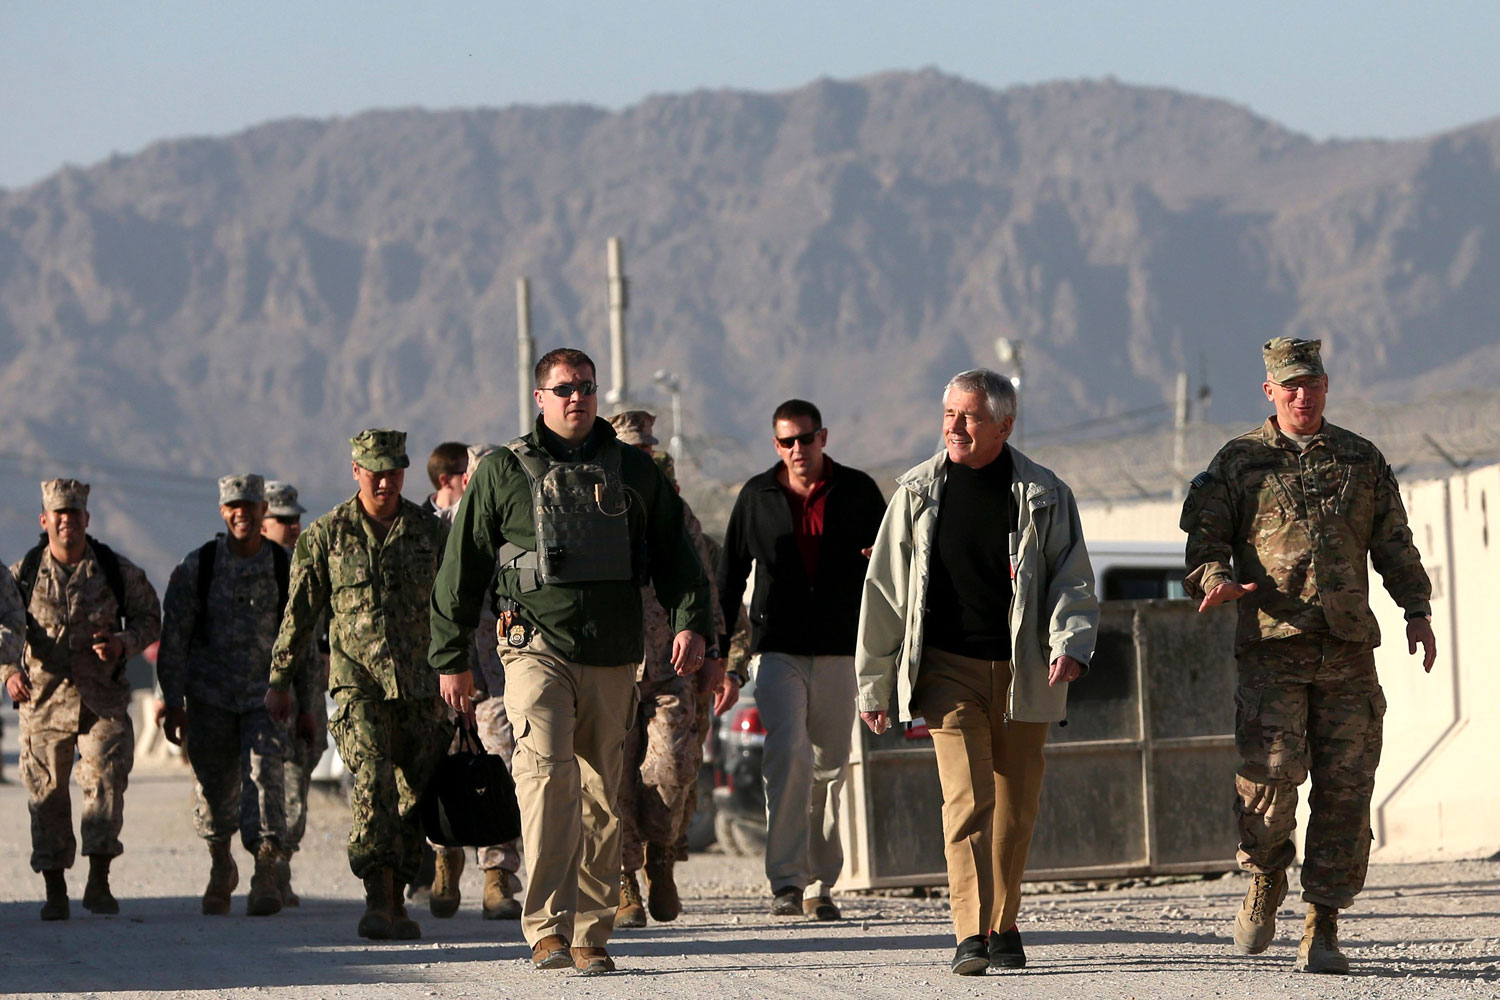 Chuck Hagel mantiene un compromiso "probado y duradero" con la seguridad en Oriente Próximo